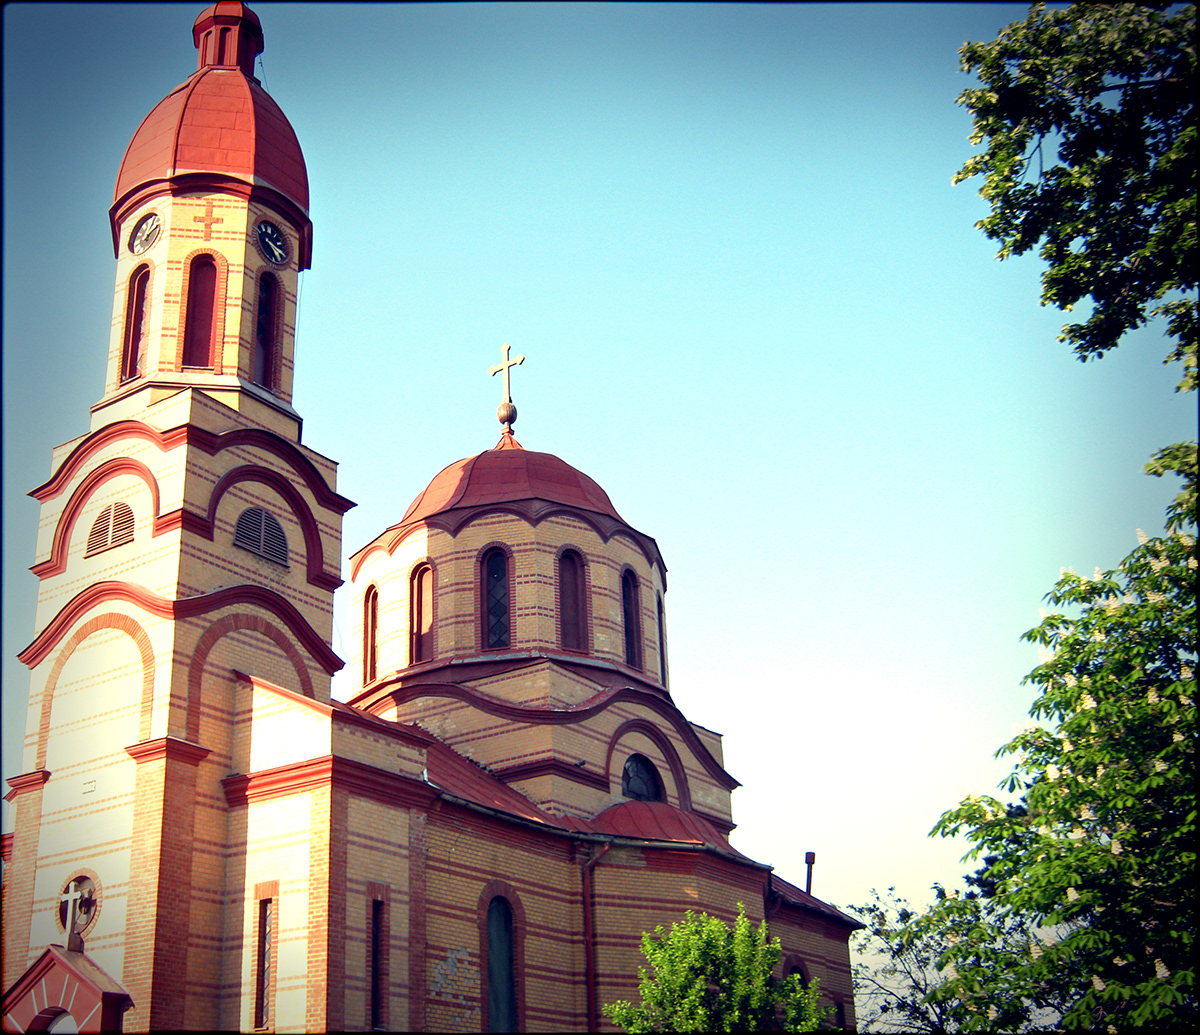 bela crkva vrsac Serbia